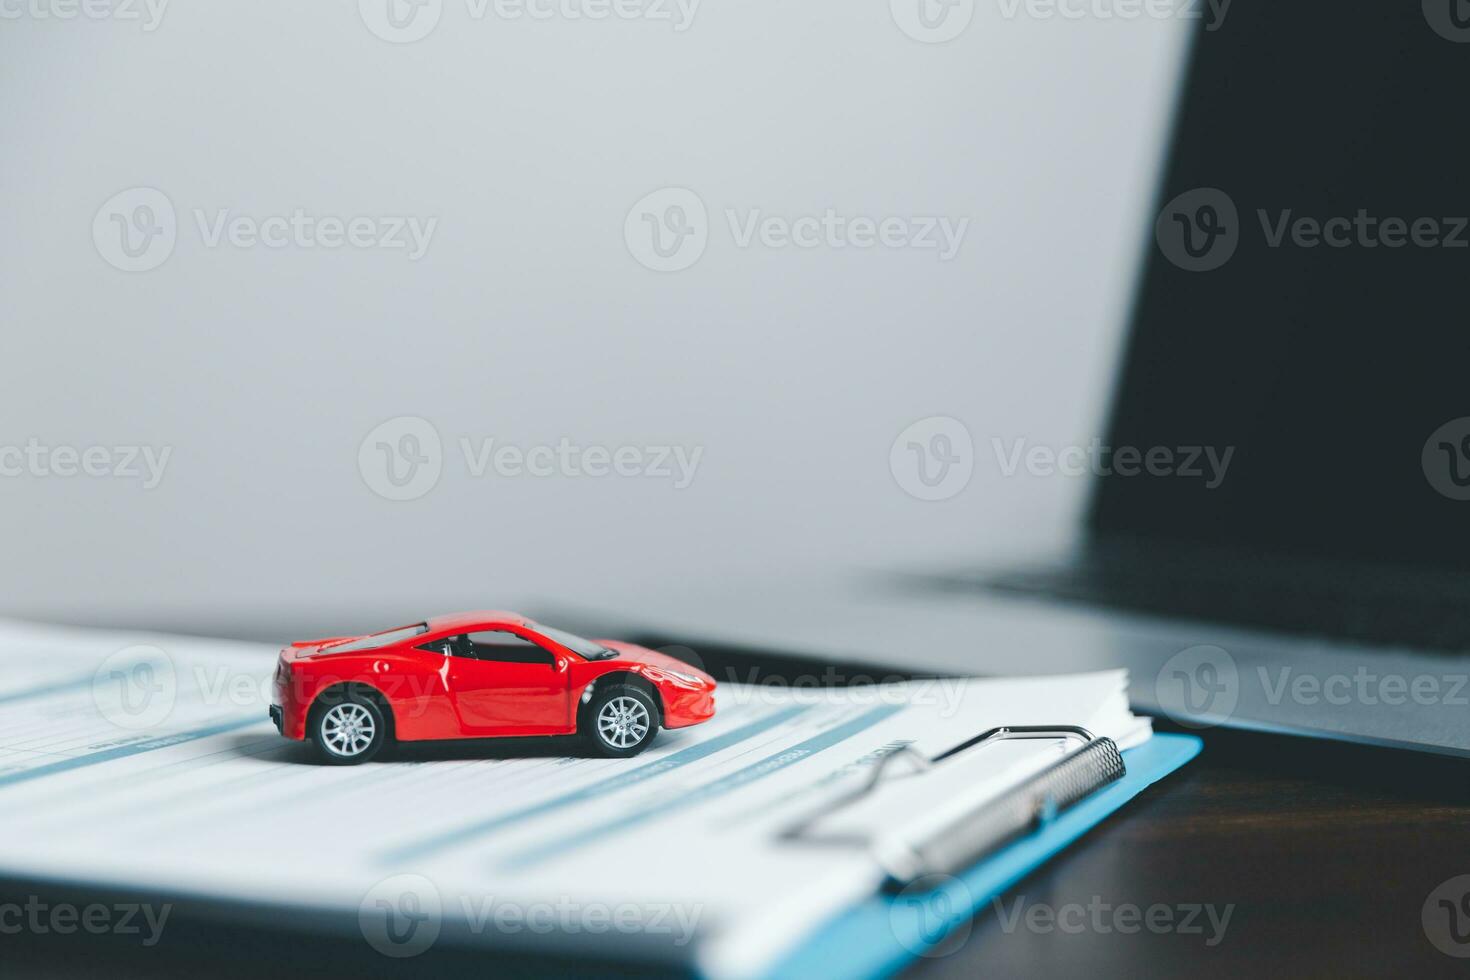 företag kvinnas hand skyddande röd leksak bil på skrivbord. planera till klara av transport finansiera kostar. begrepp av bil försäkring företag, sparande köpa - försäljning med beskatta och lån för ny bil. foto